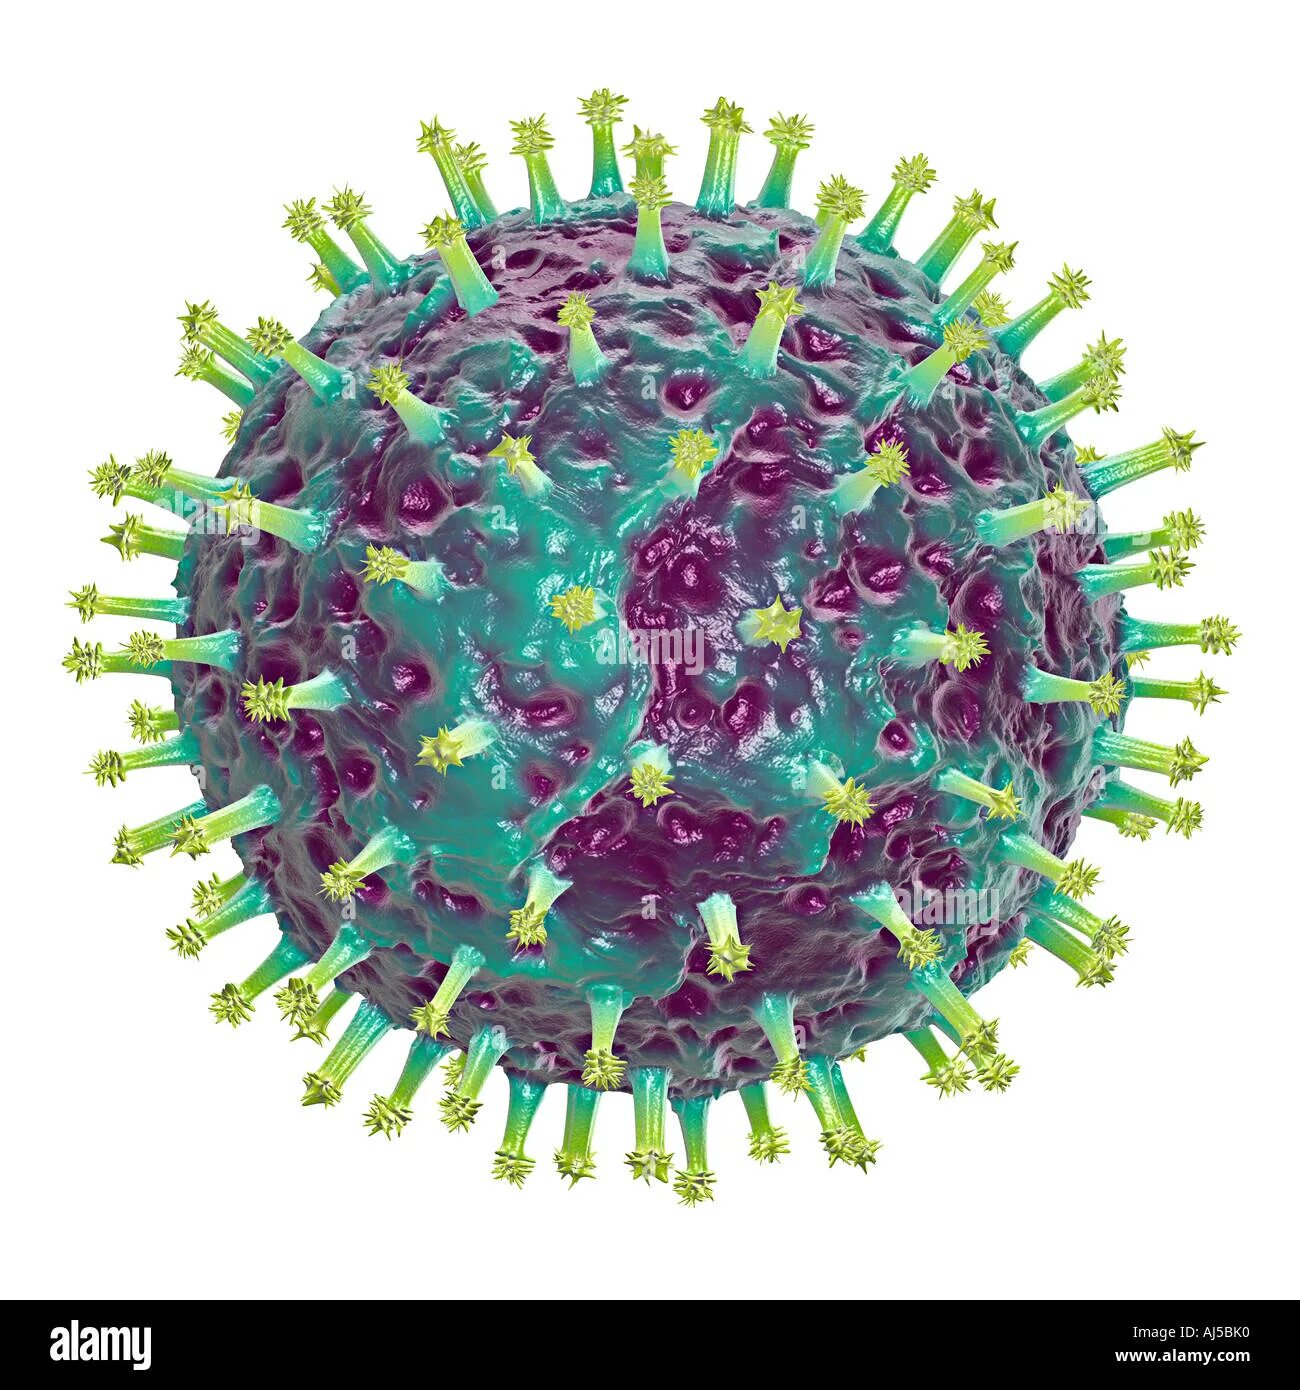 Респираторно-синцитиальный вирус человека. Респираторно- синцитиальный вирус резистентность. Вирус гриппа. Изображение вируса гриппа.